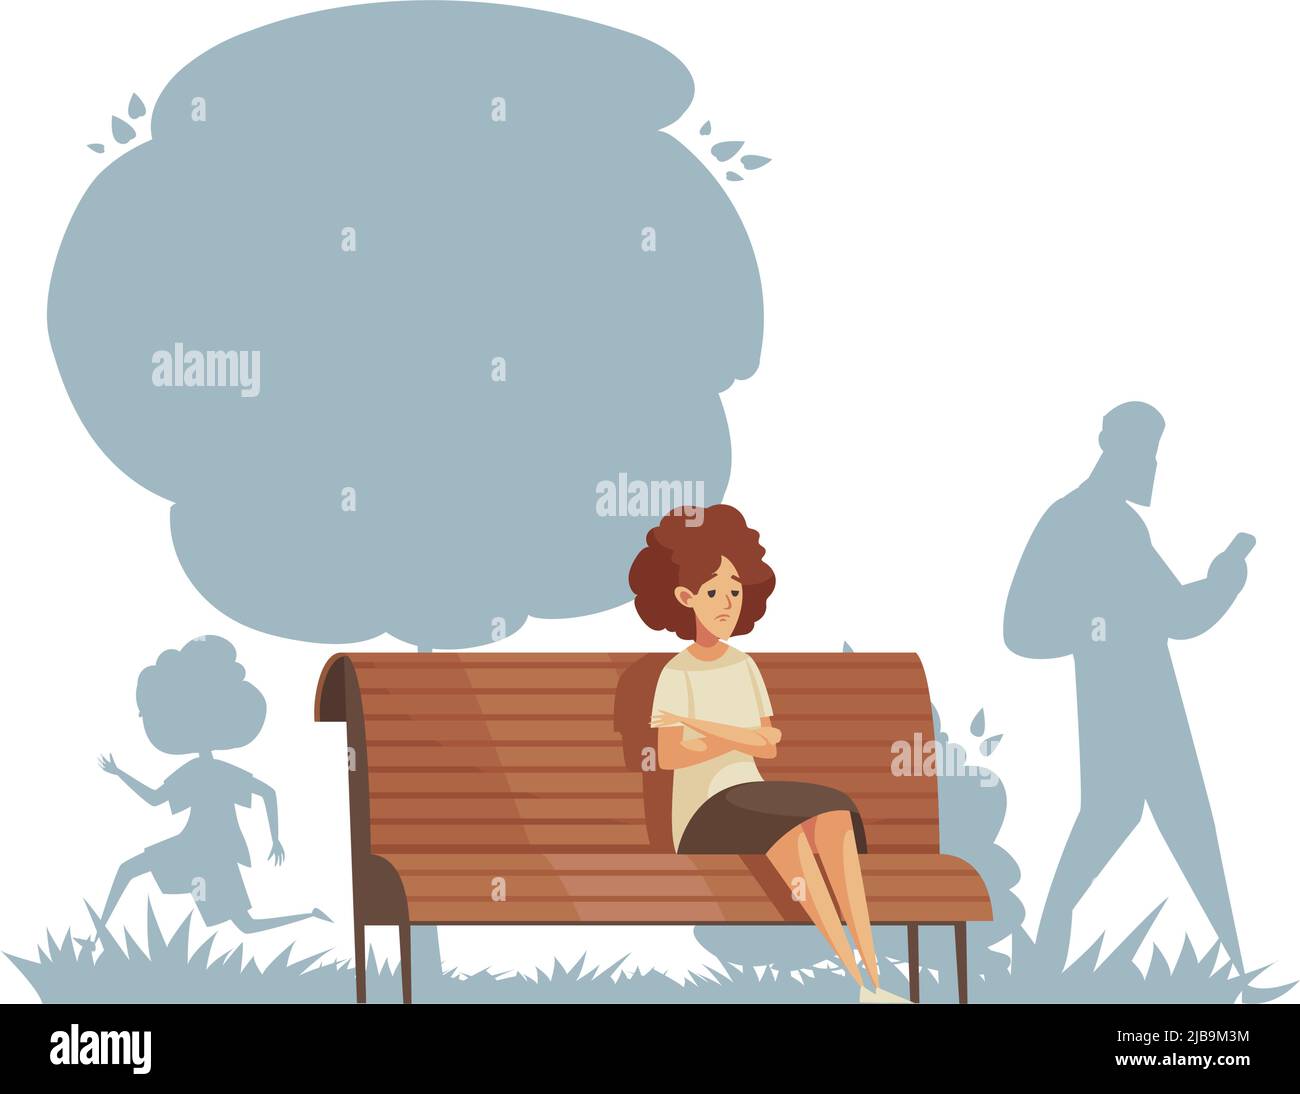 Einsame Komposition mit Charakter des jungen sitzen auf Parkbank allein mit Silhouetten von Menschen Vektor-Illustration Stock Vektor